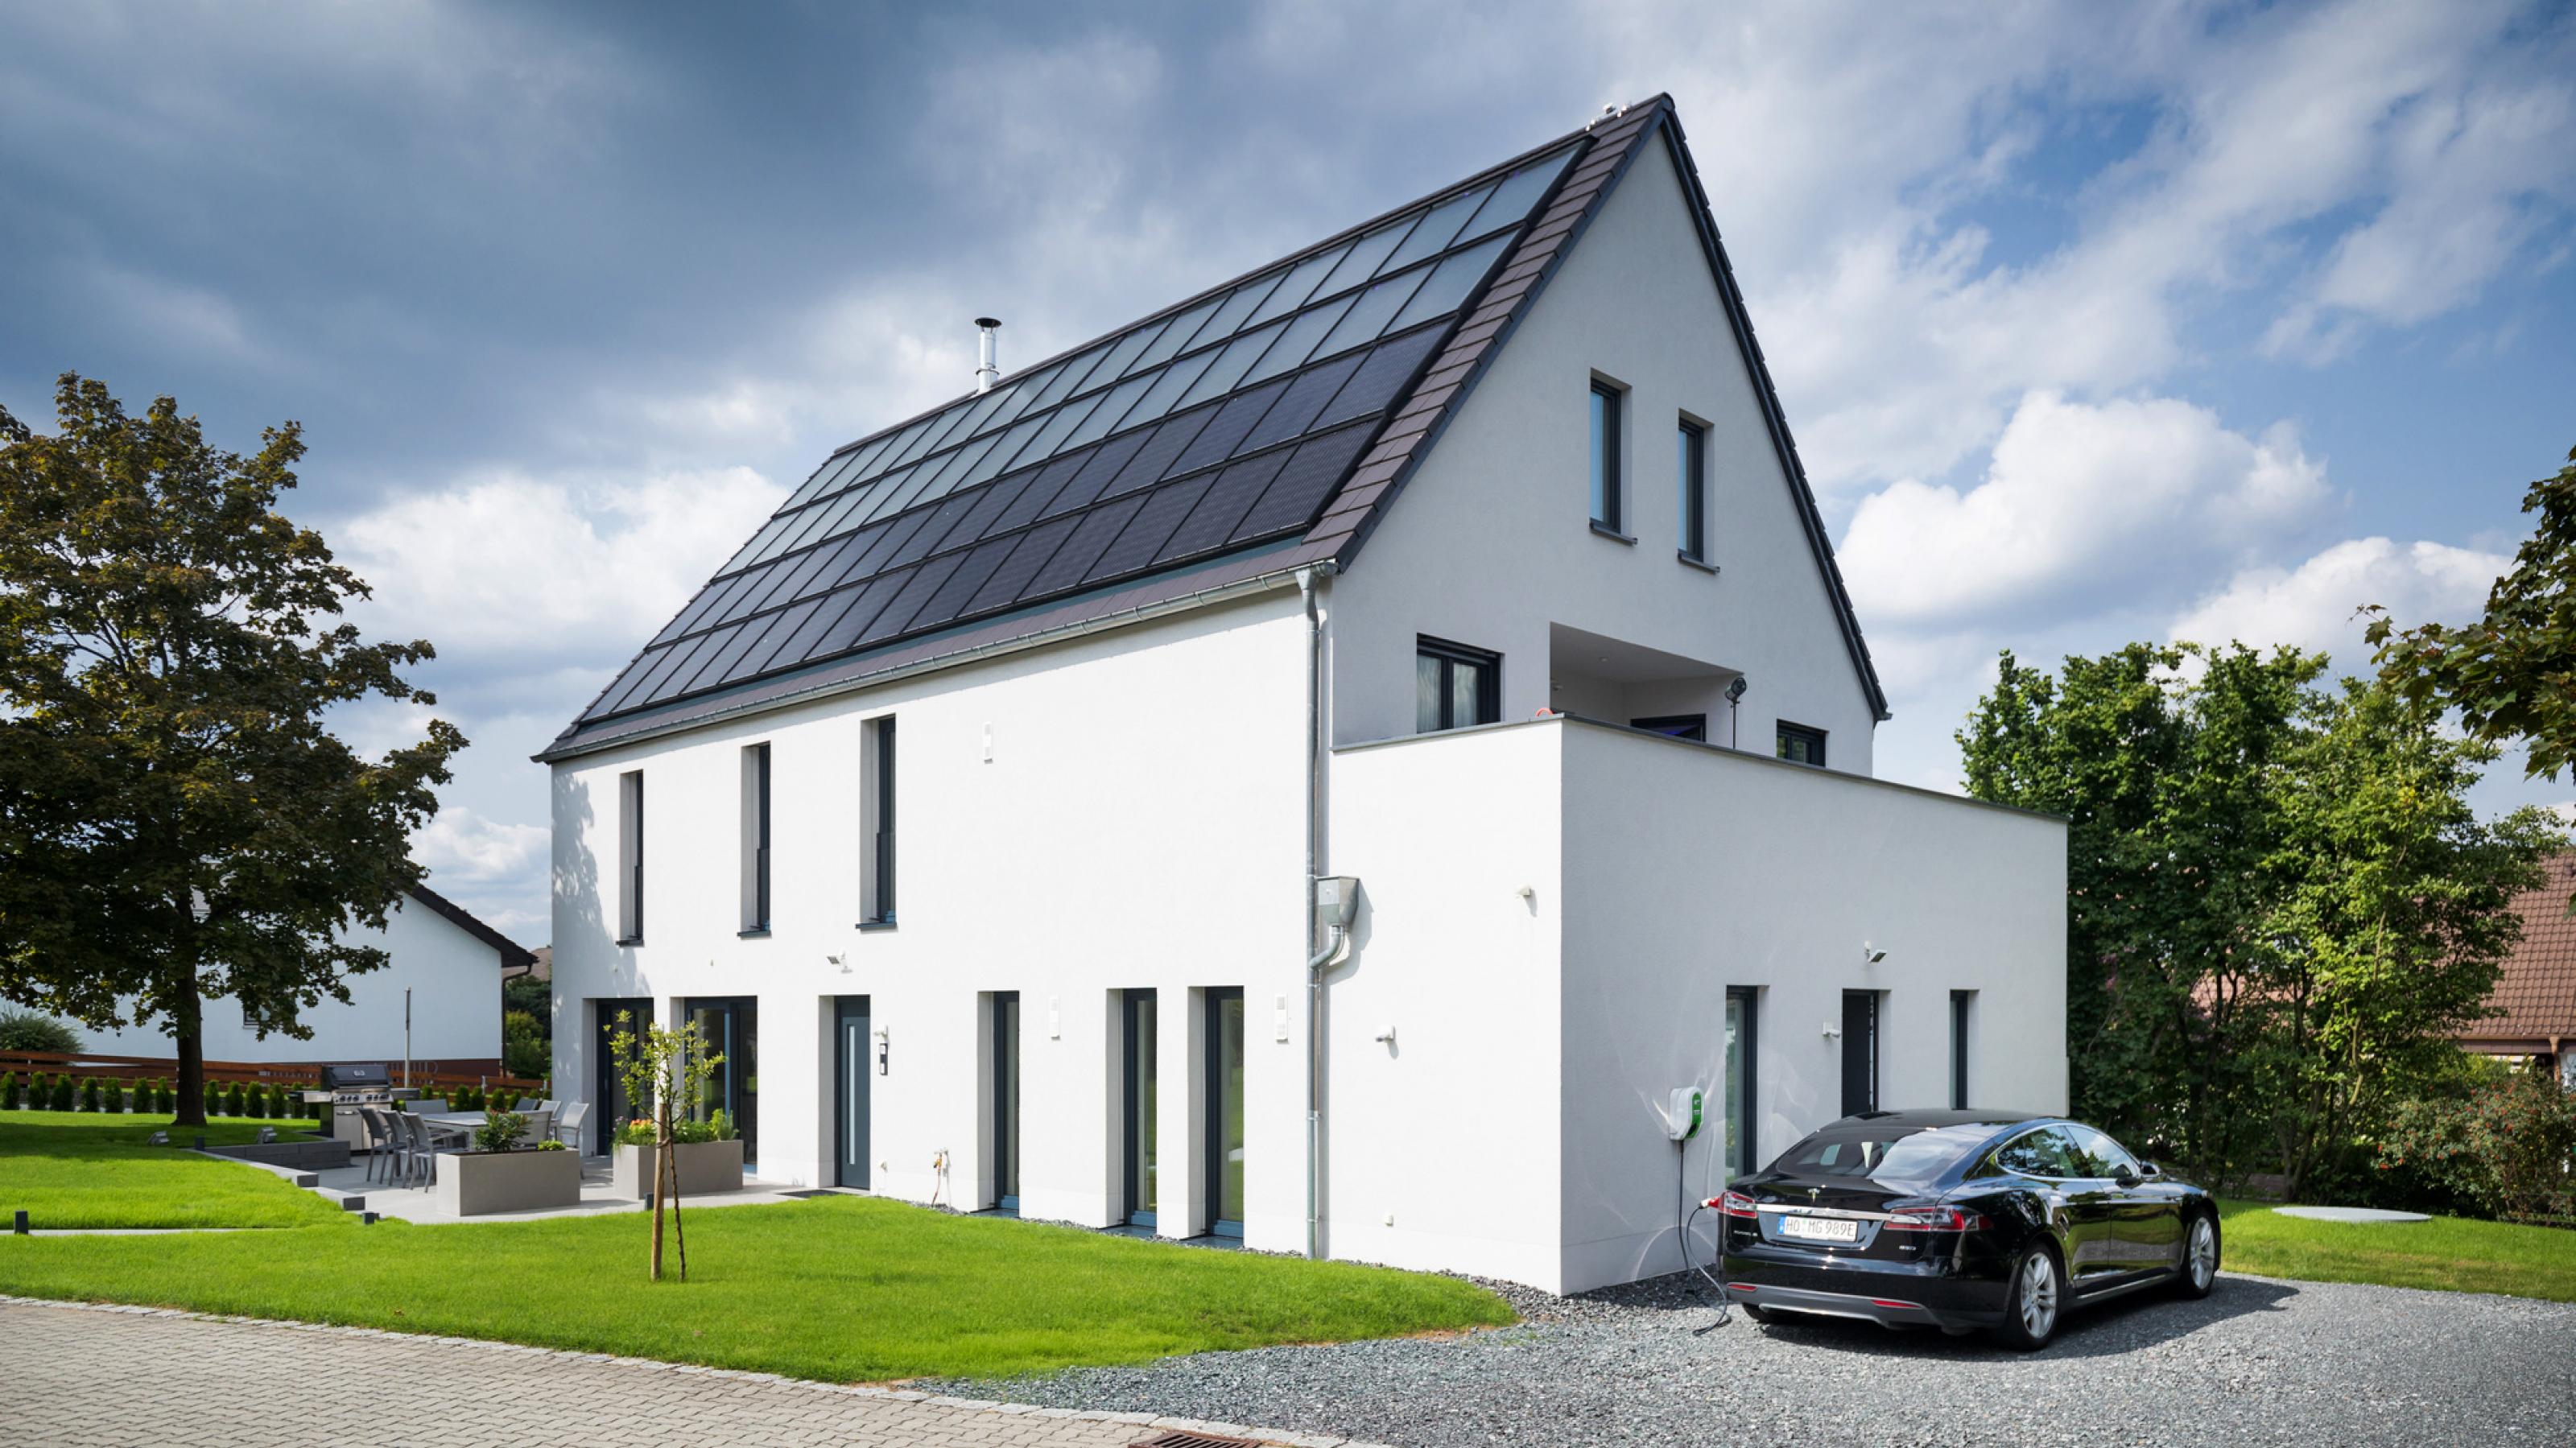 Weiß verputztes, modernes Einfamilienhaus mit Photovoltaik und Solarthermie auf dem Dach, im Vordergrund ein Garten.